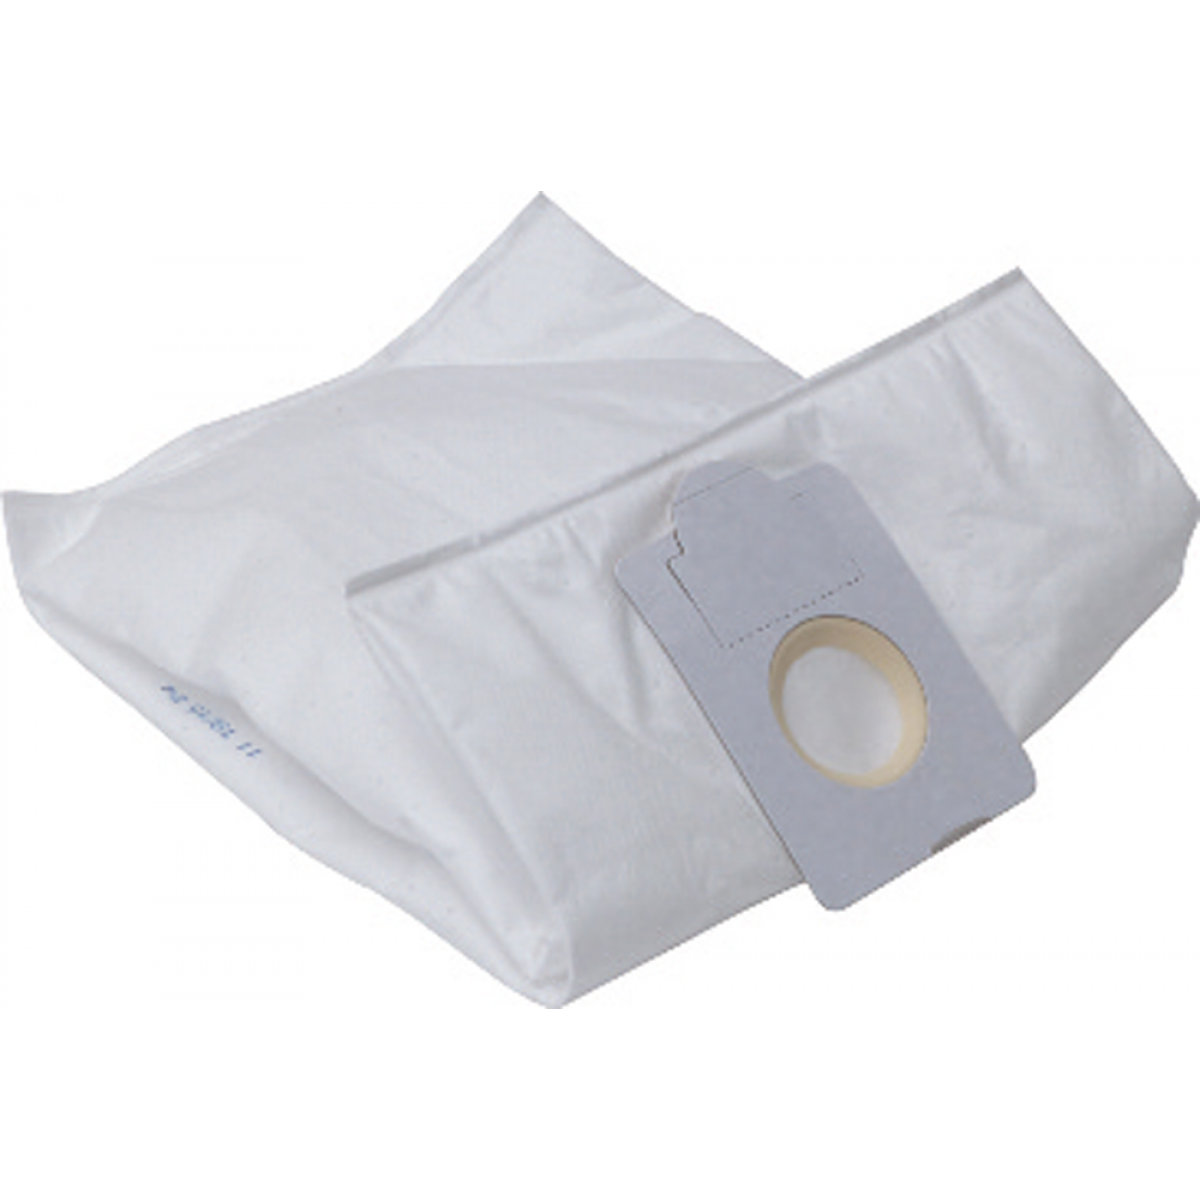 Product description:Micro fleece filter bag 